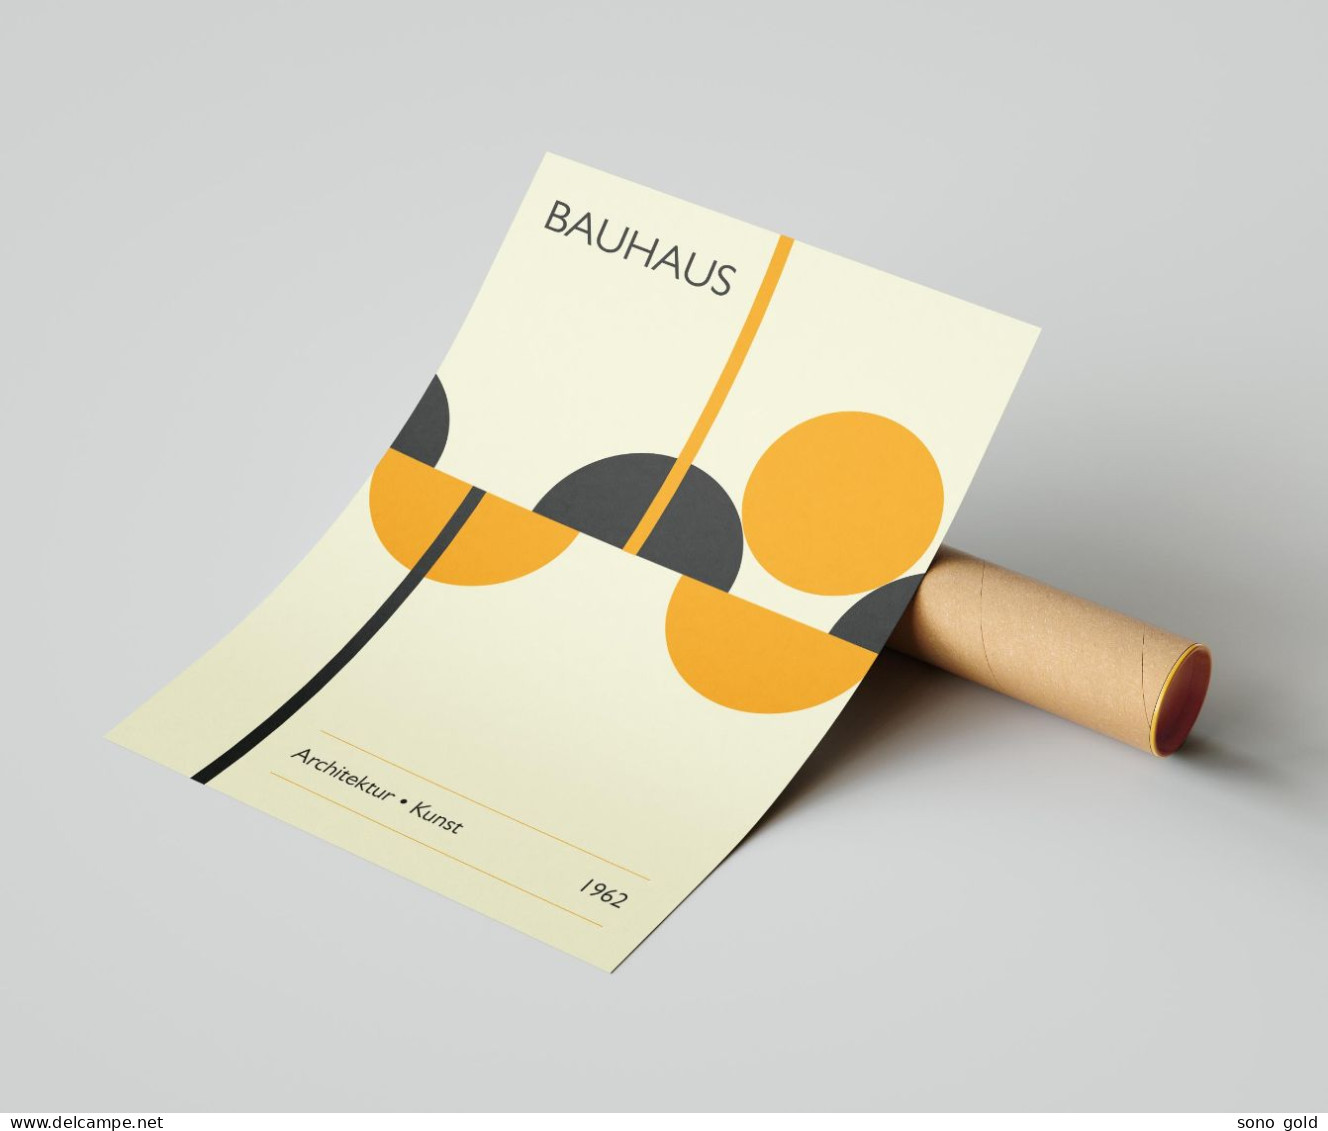 Bauhaus 1962 ~ Manifesto ~ Poster ~ Design ~ Architecture ~ Furnishing ~ Vintage ~ Mid Century - Zeitgenössische Kunst